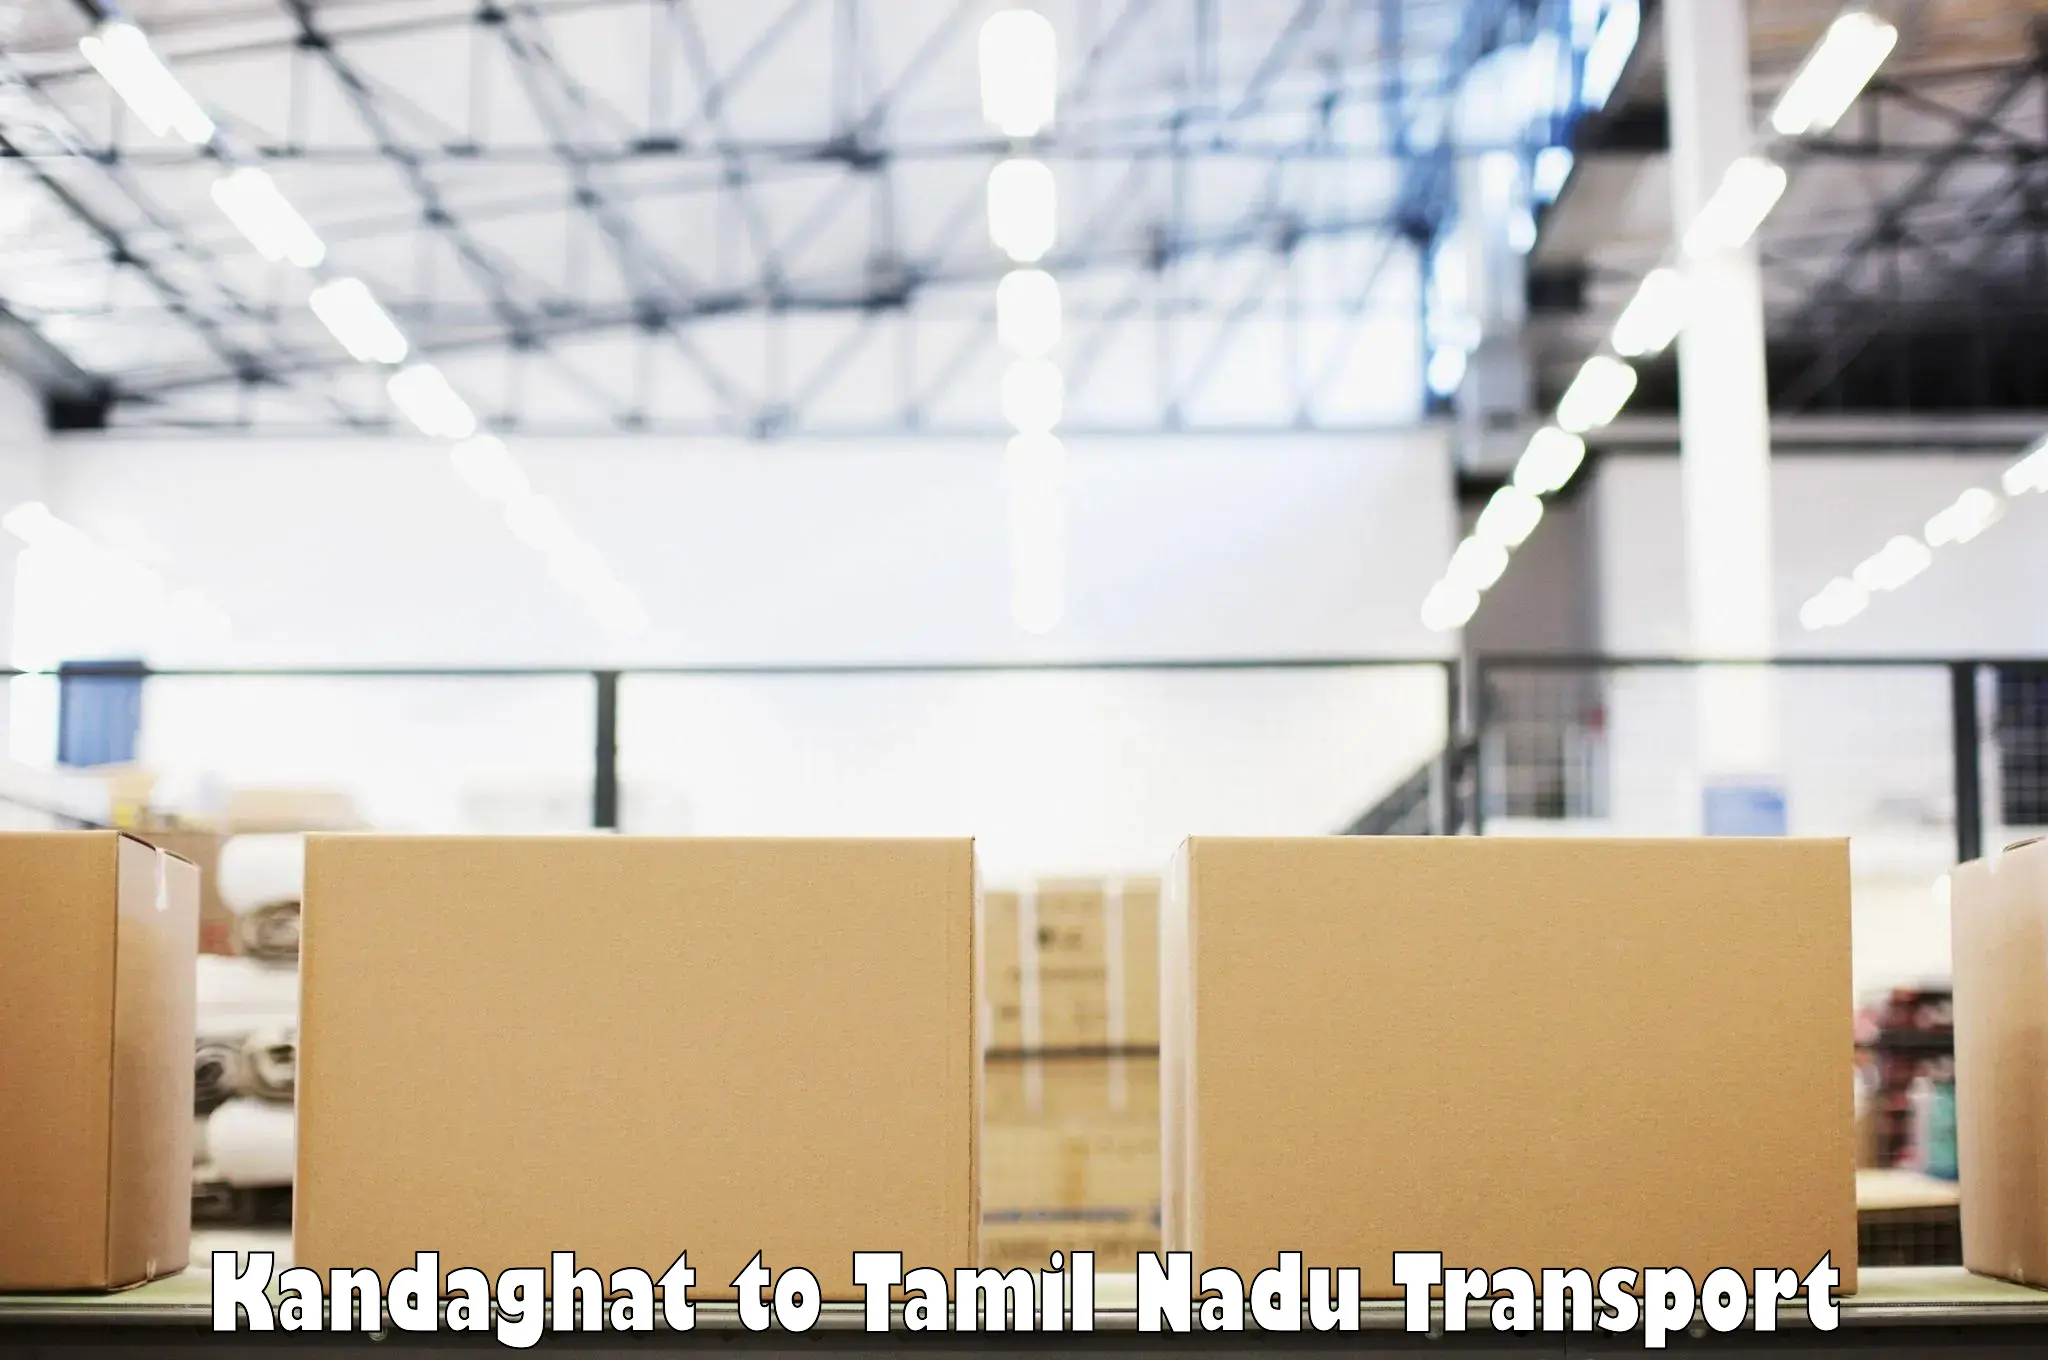 Daily transport service in Kandaghat to Tiruturaipundi